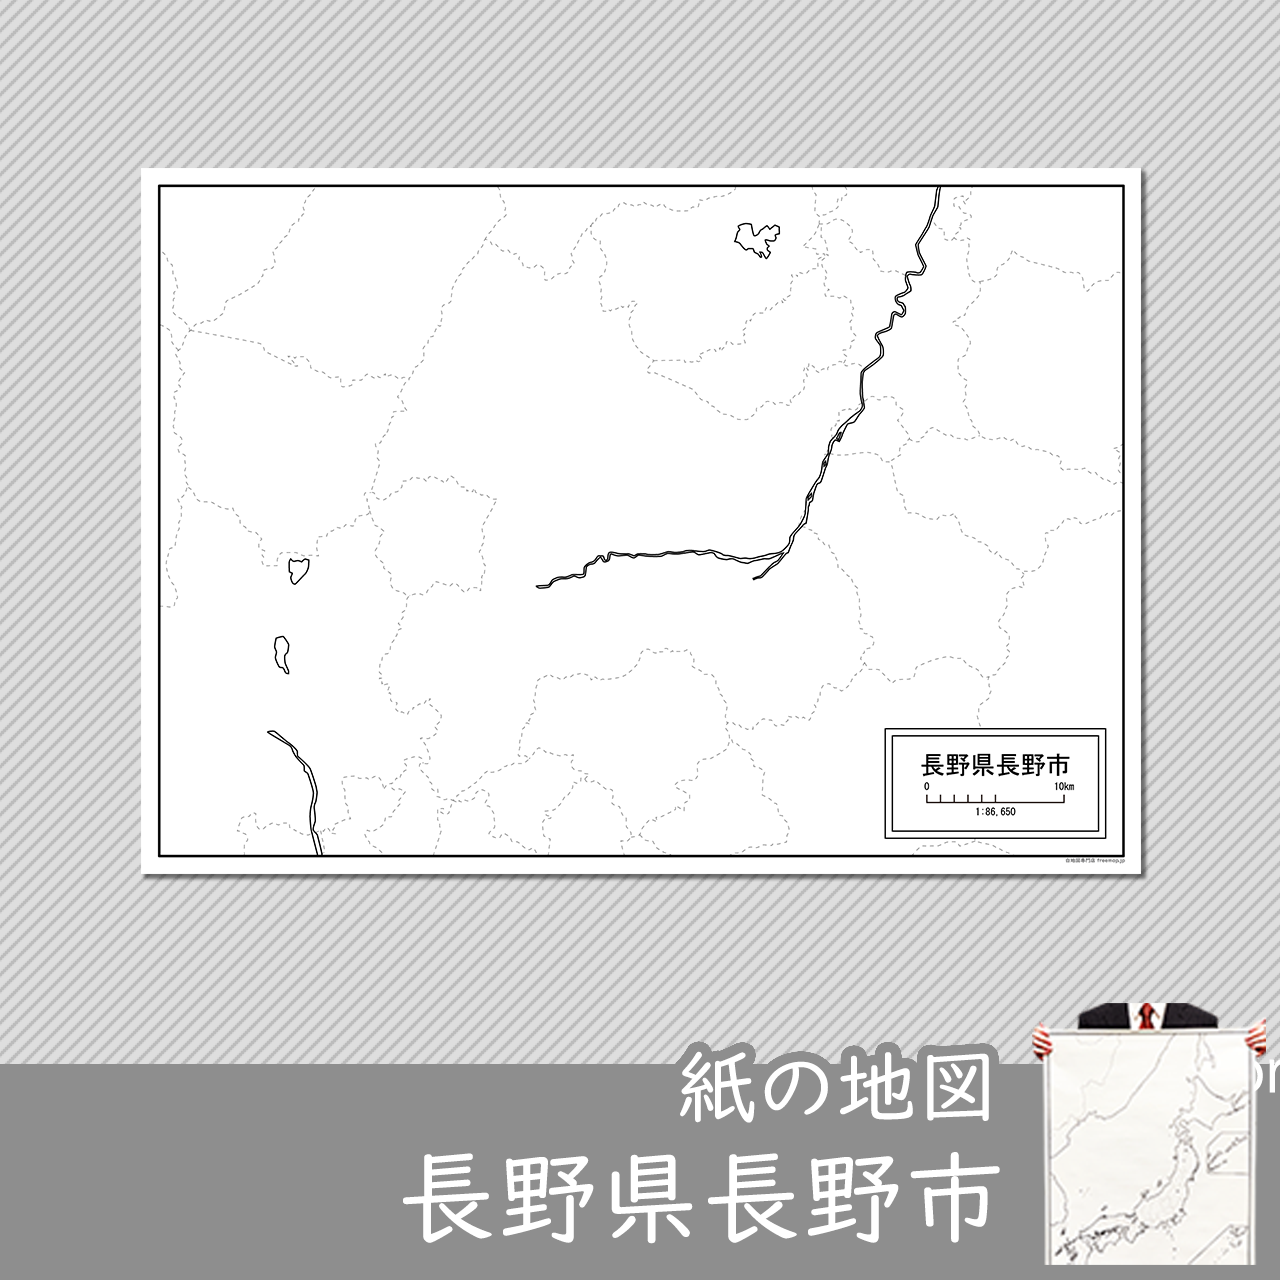 長野市の紙の白地図のサムネイル